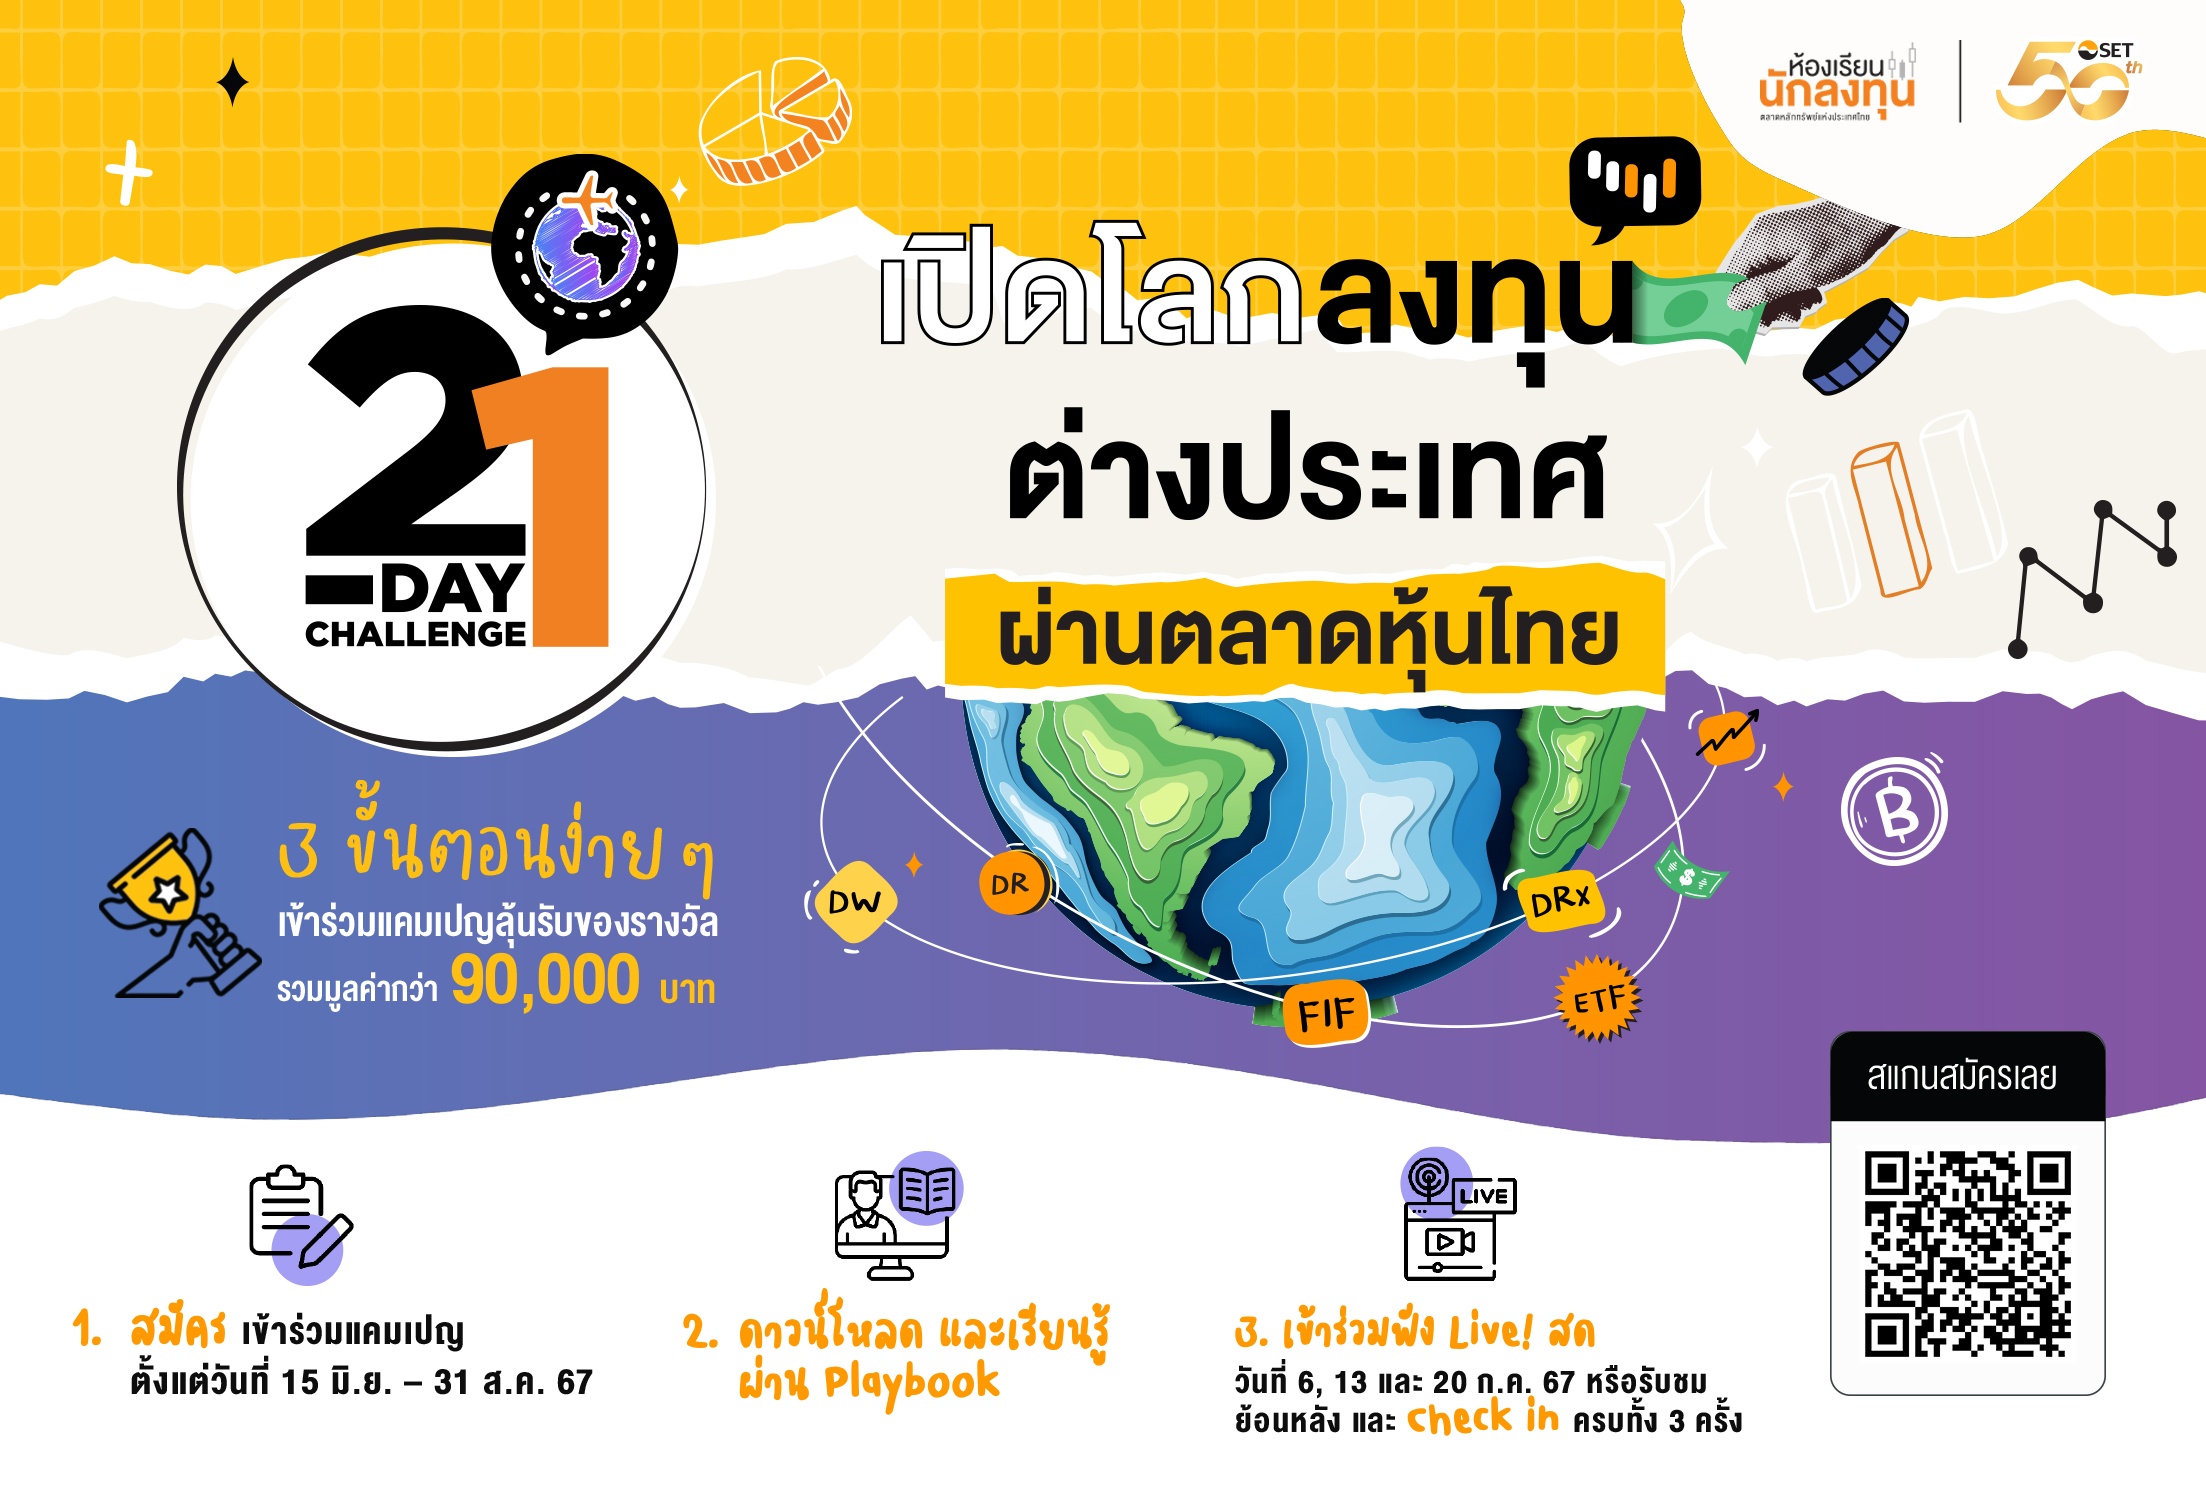 ตลาดหลักทรัพย์ฯ ชวนทำภารกิจ 21-Day Challenge เปิดโลกลงทุนต่างประเทศ ผ่านตลาดหุ้นไทย